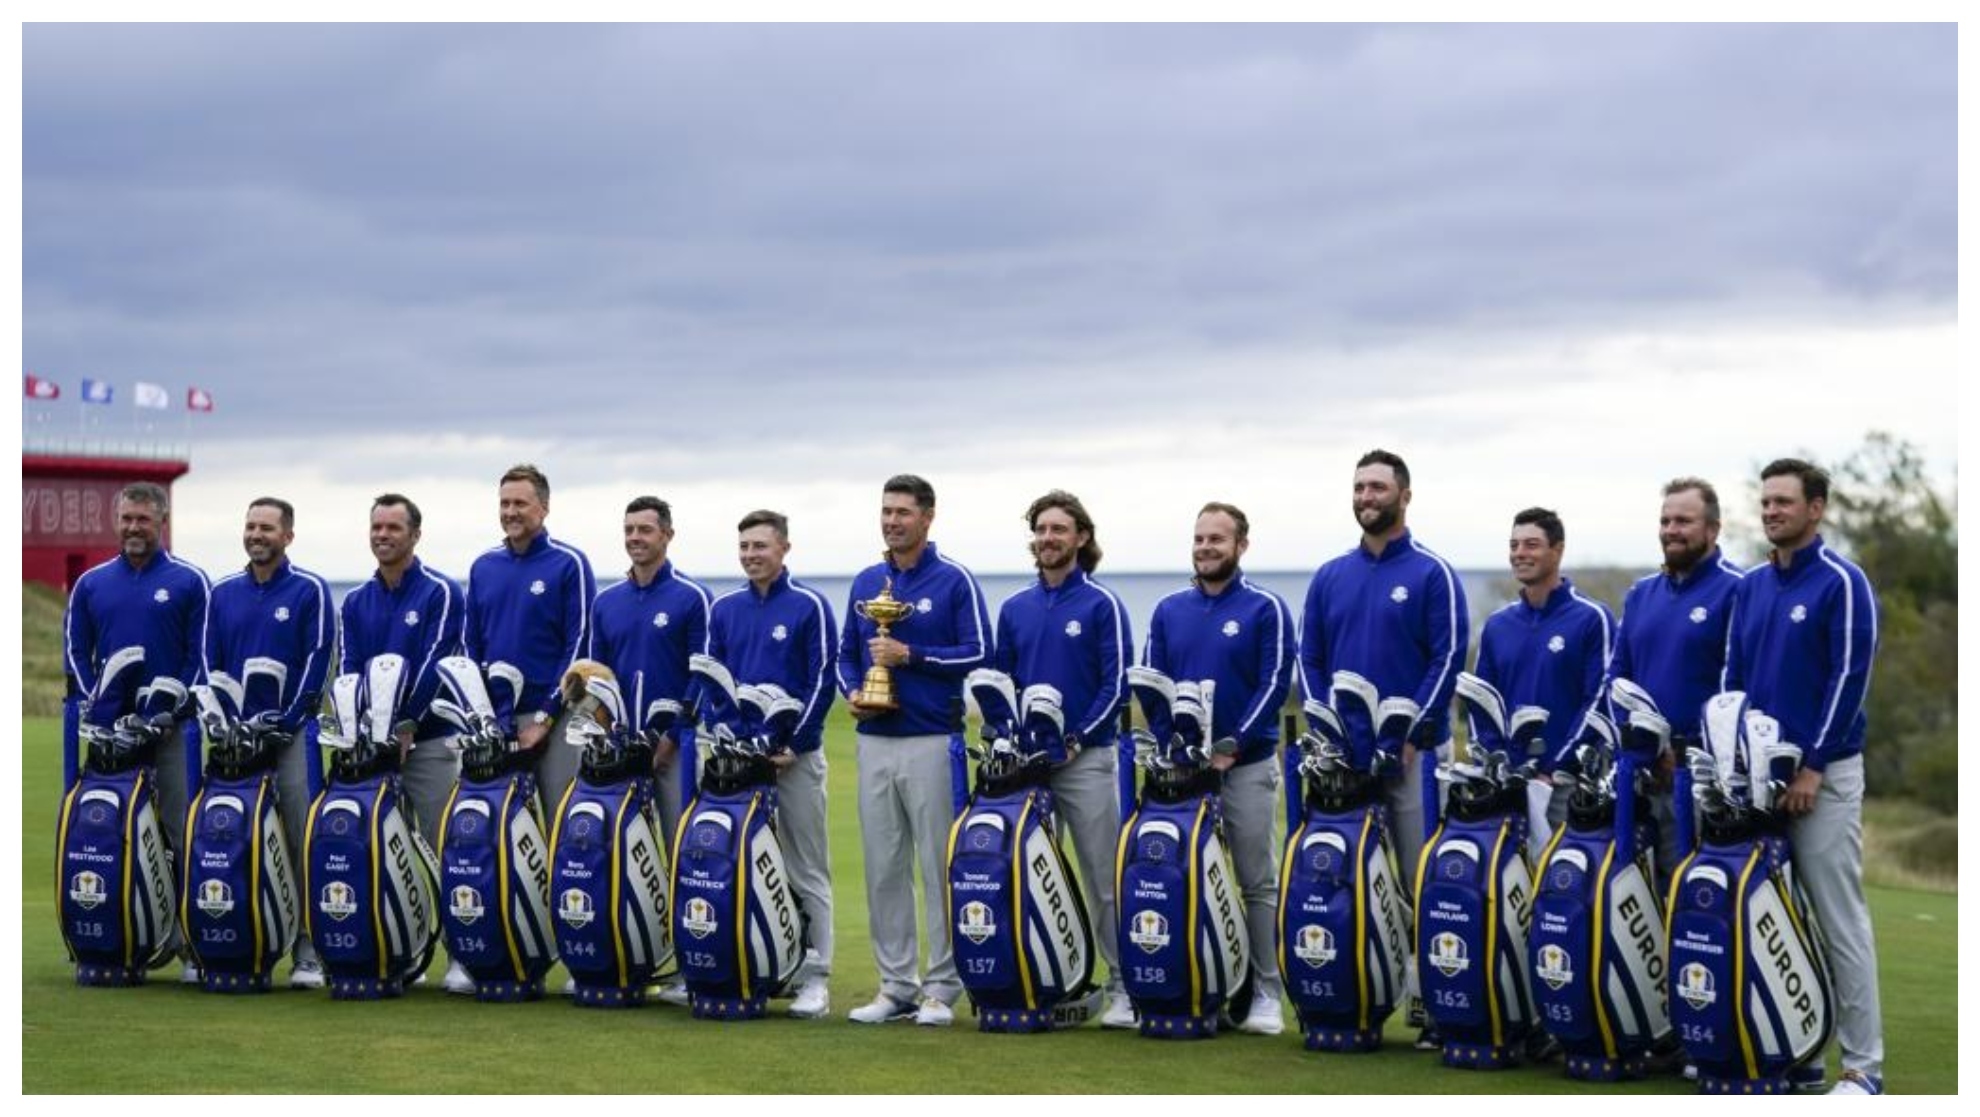 El equipo de Europa posa en Whistling Straits Golf Course.